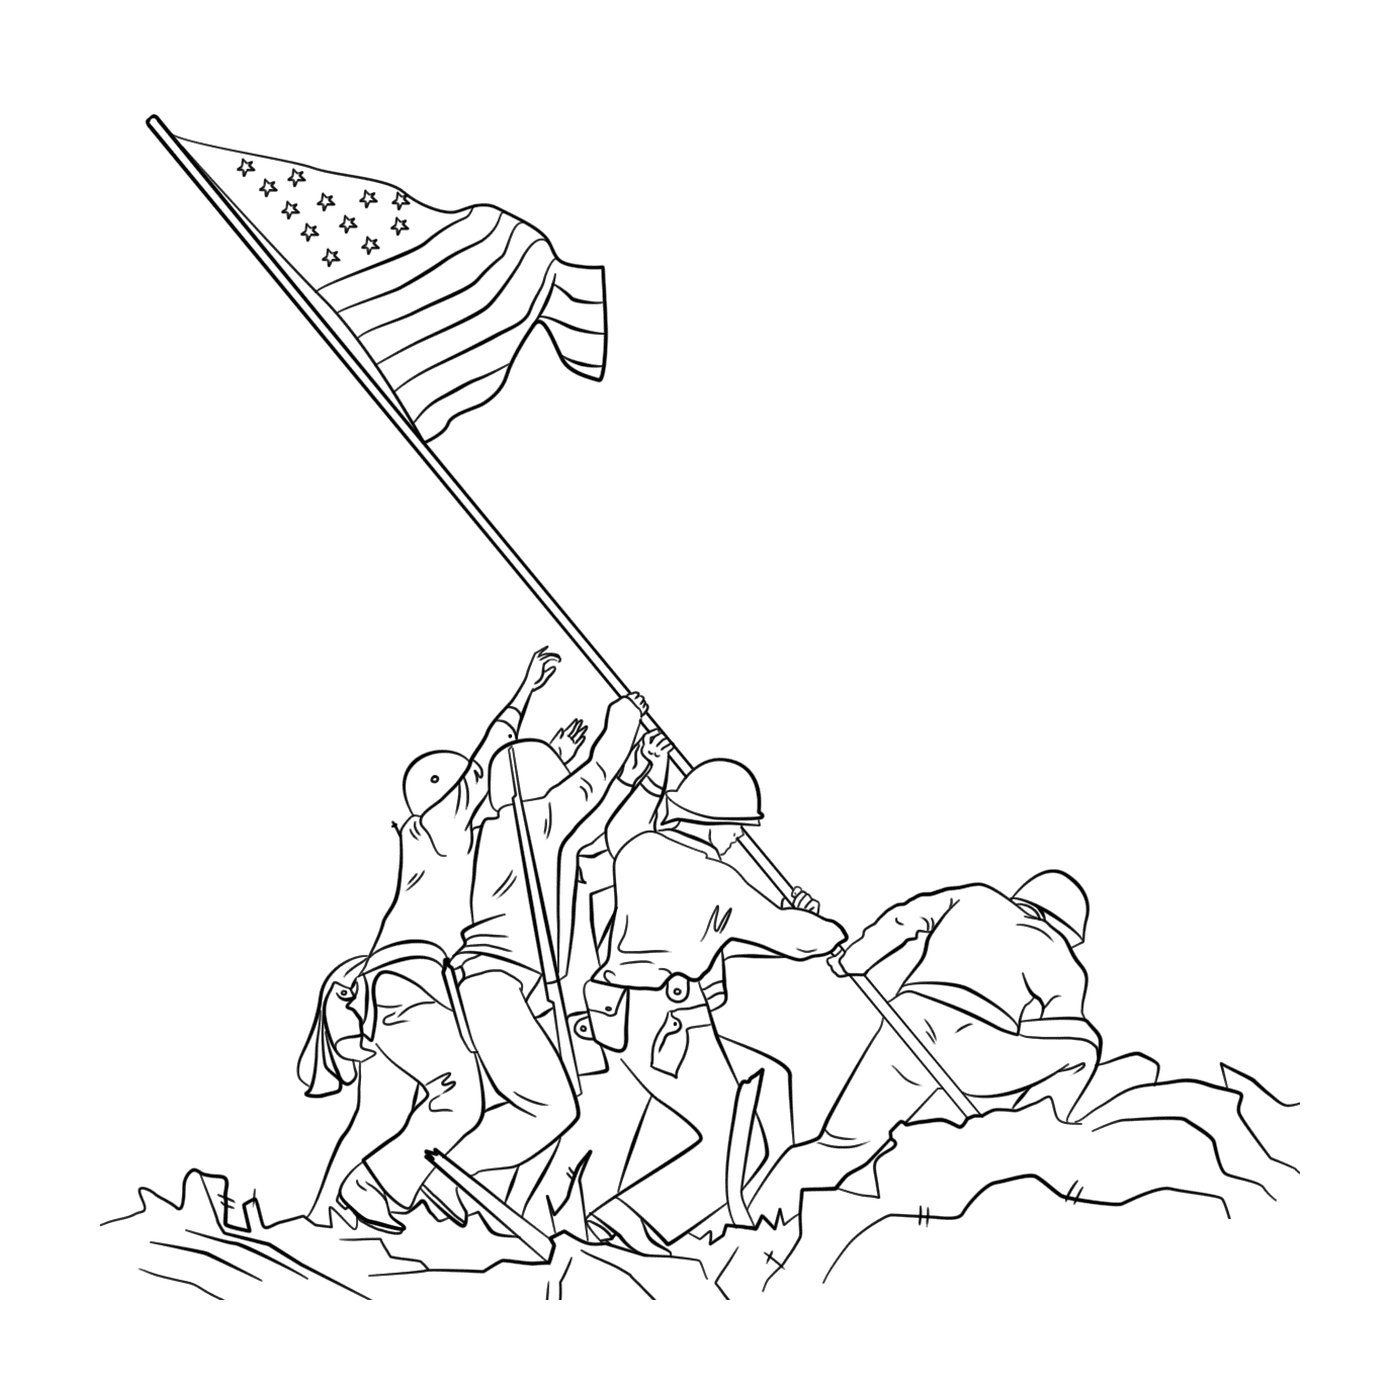  Grupo de pessoas branding uma bandeira ao levantar a bandeira em Iwo Jima 